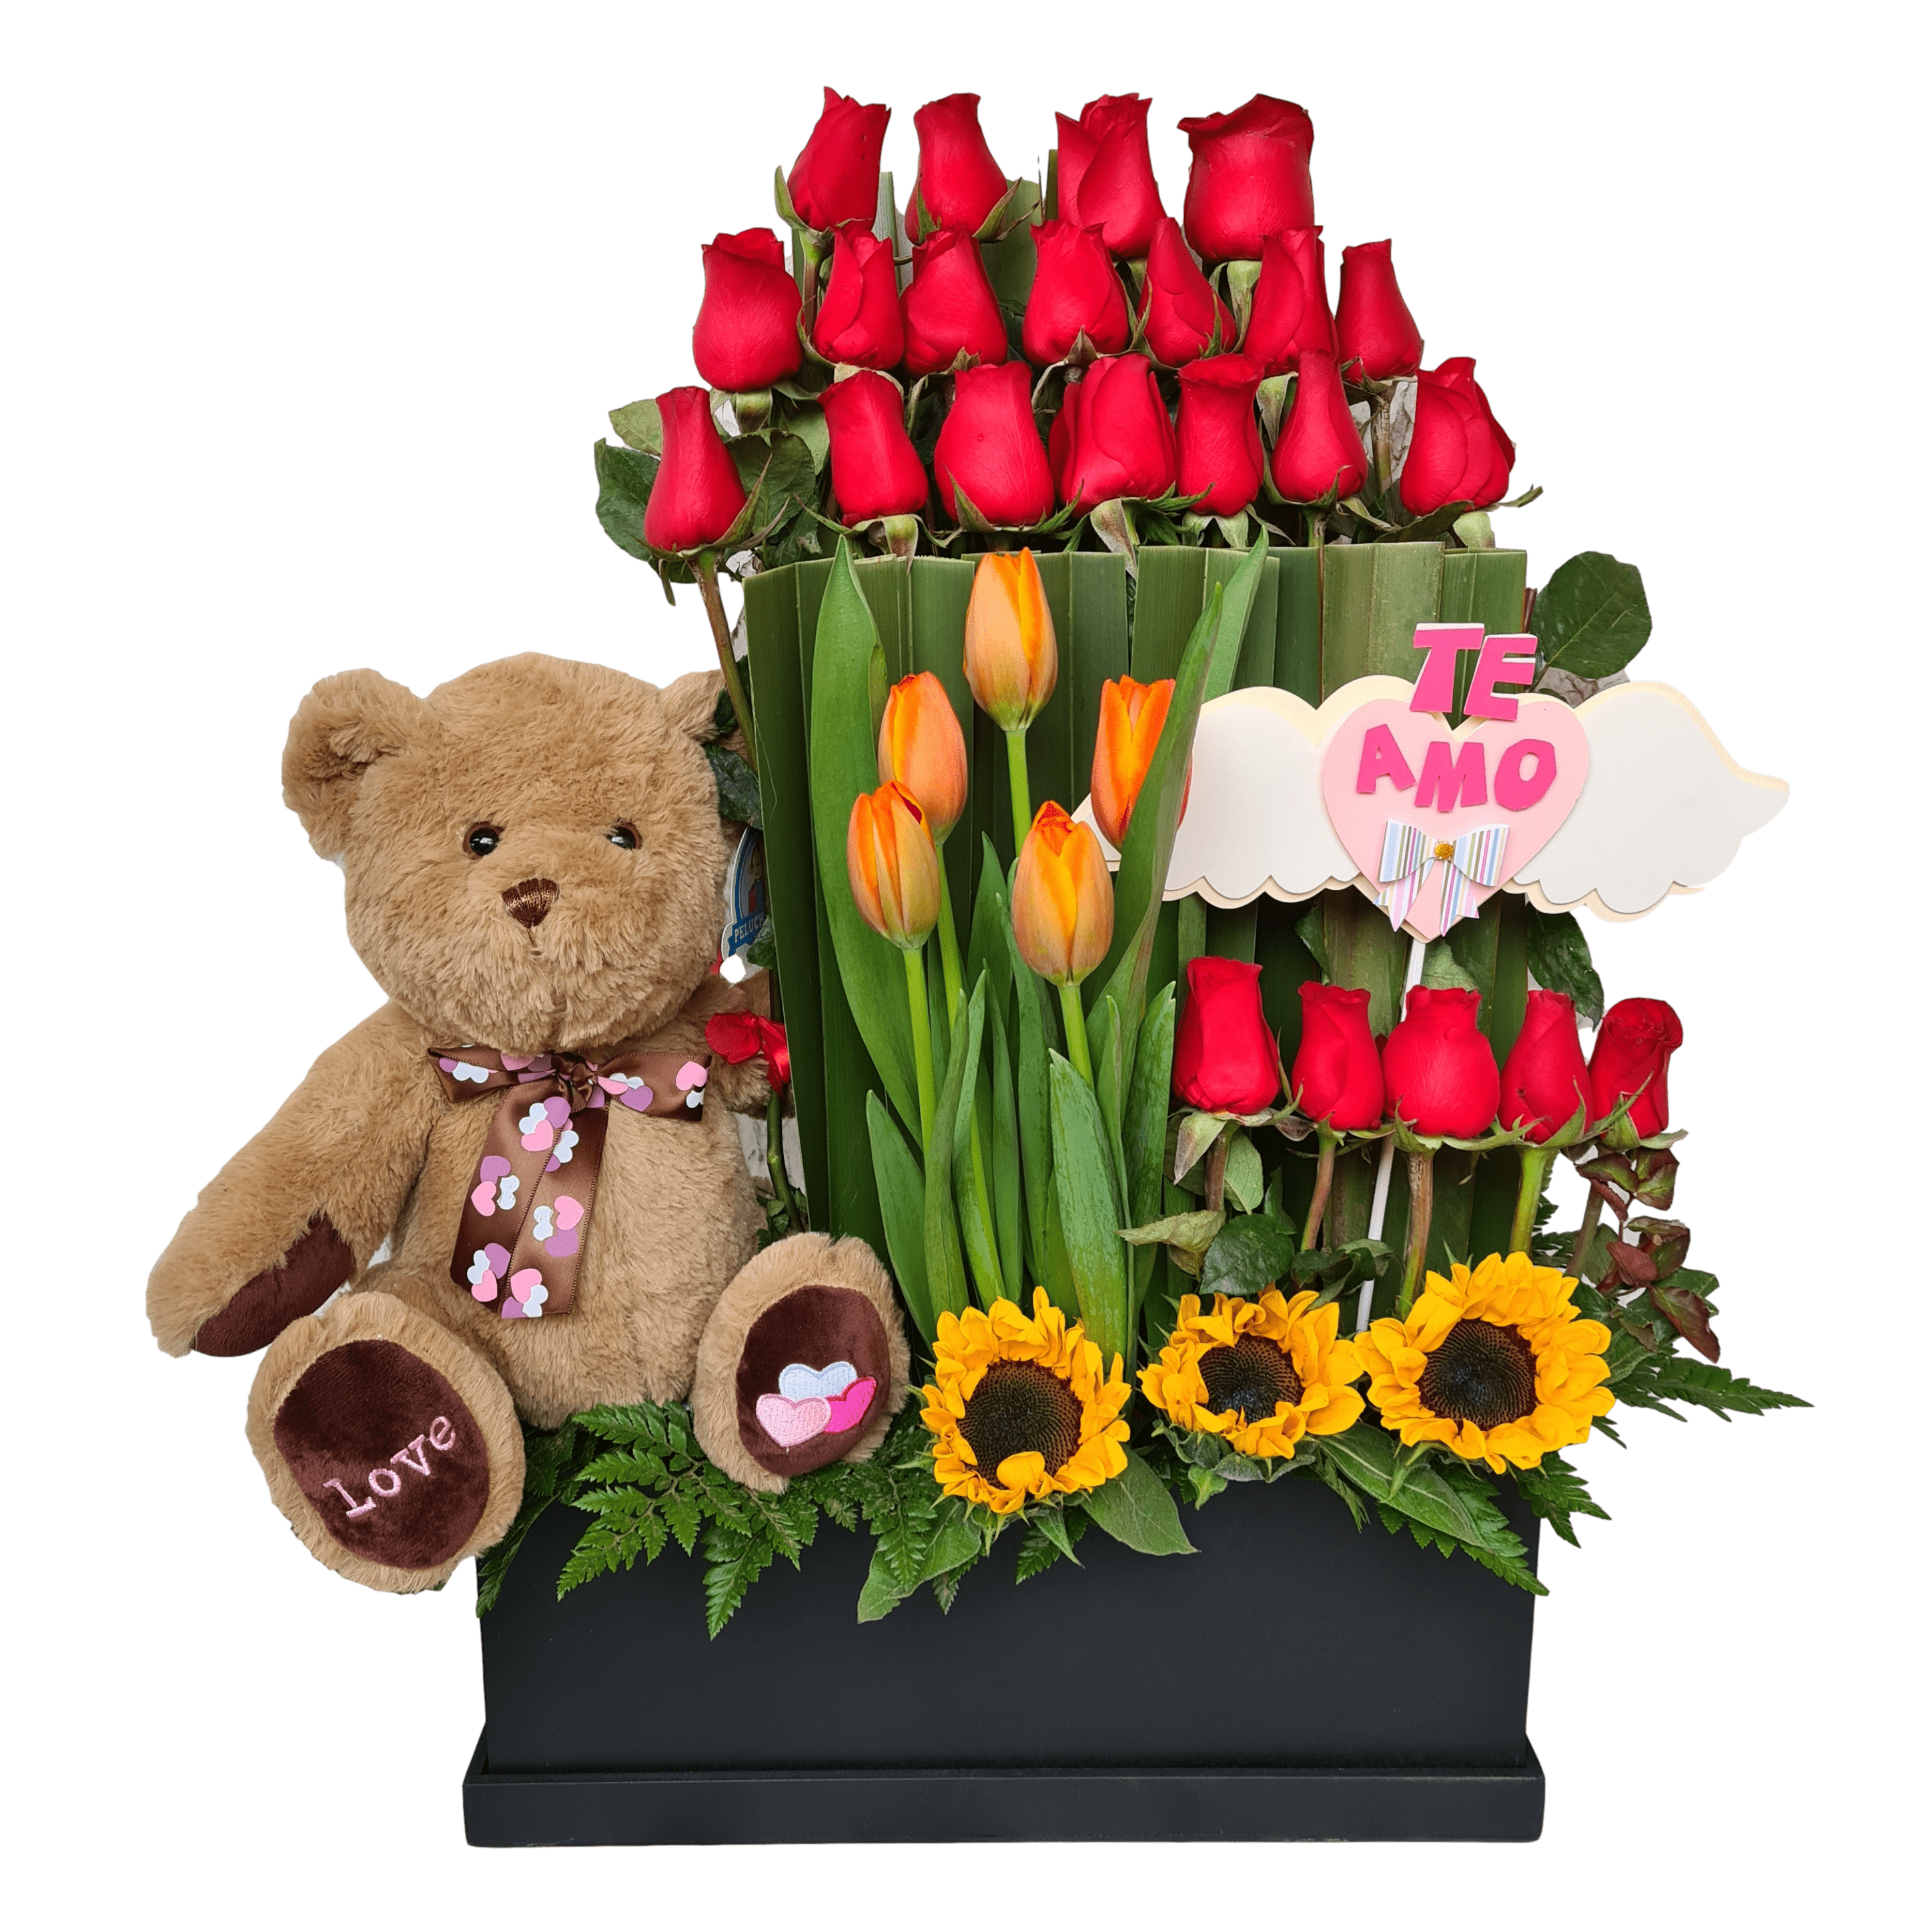 Details 300 arreglos con tulipanes y rosas